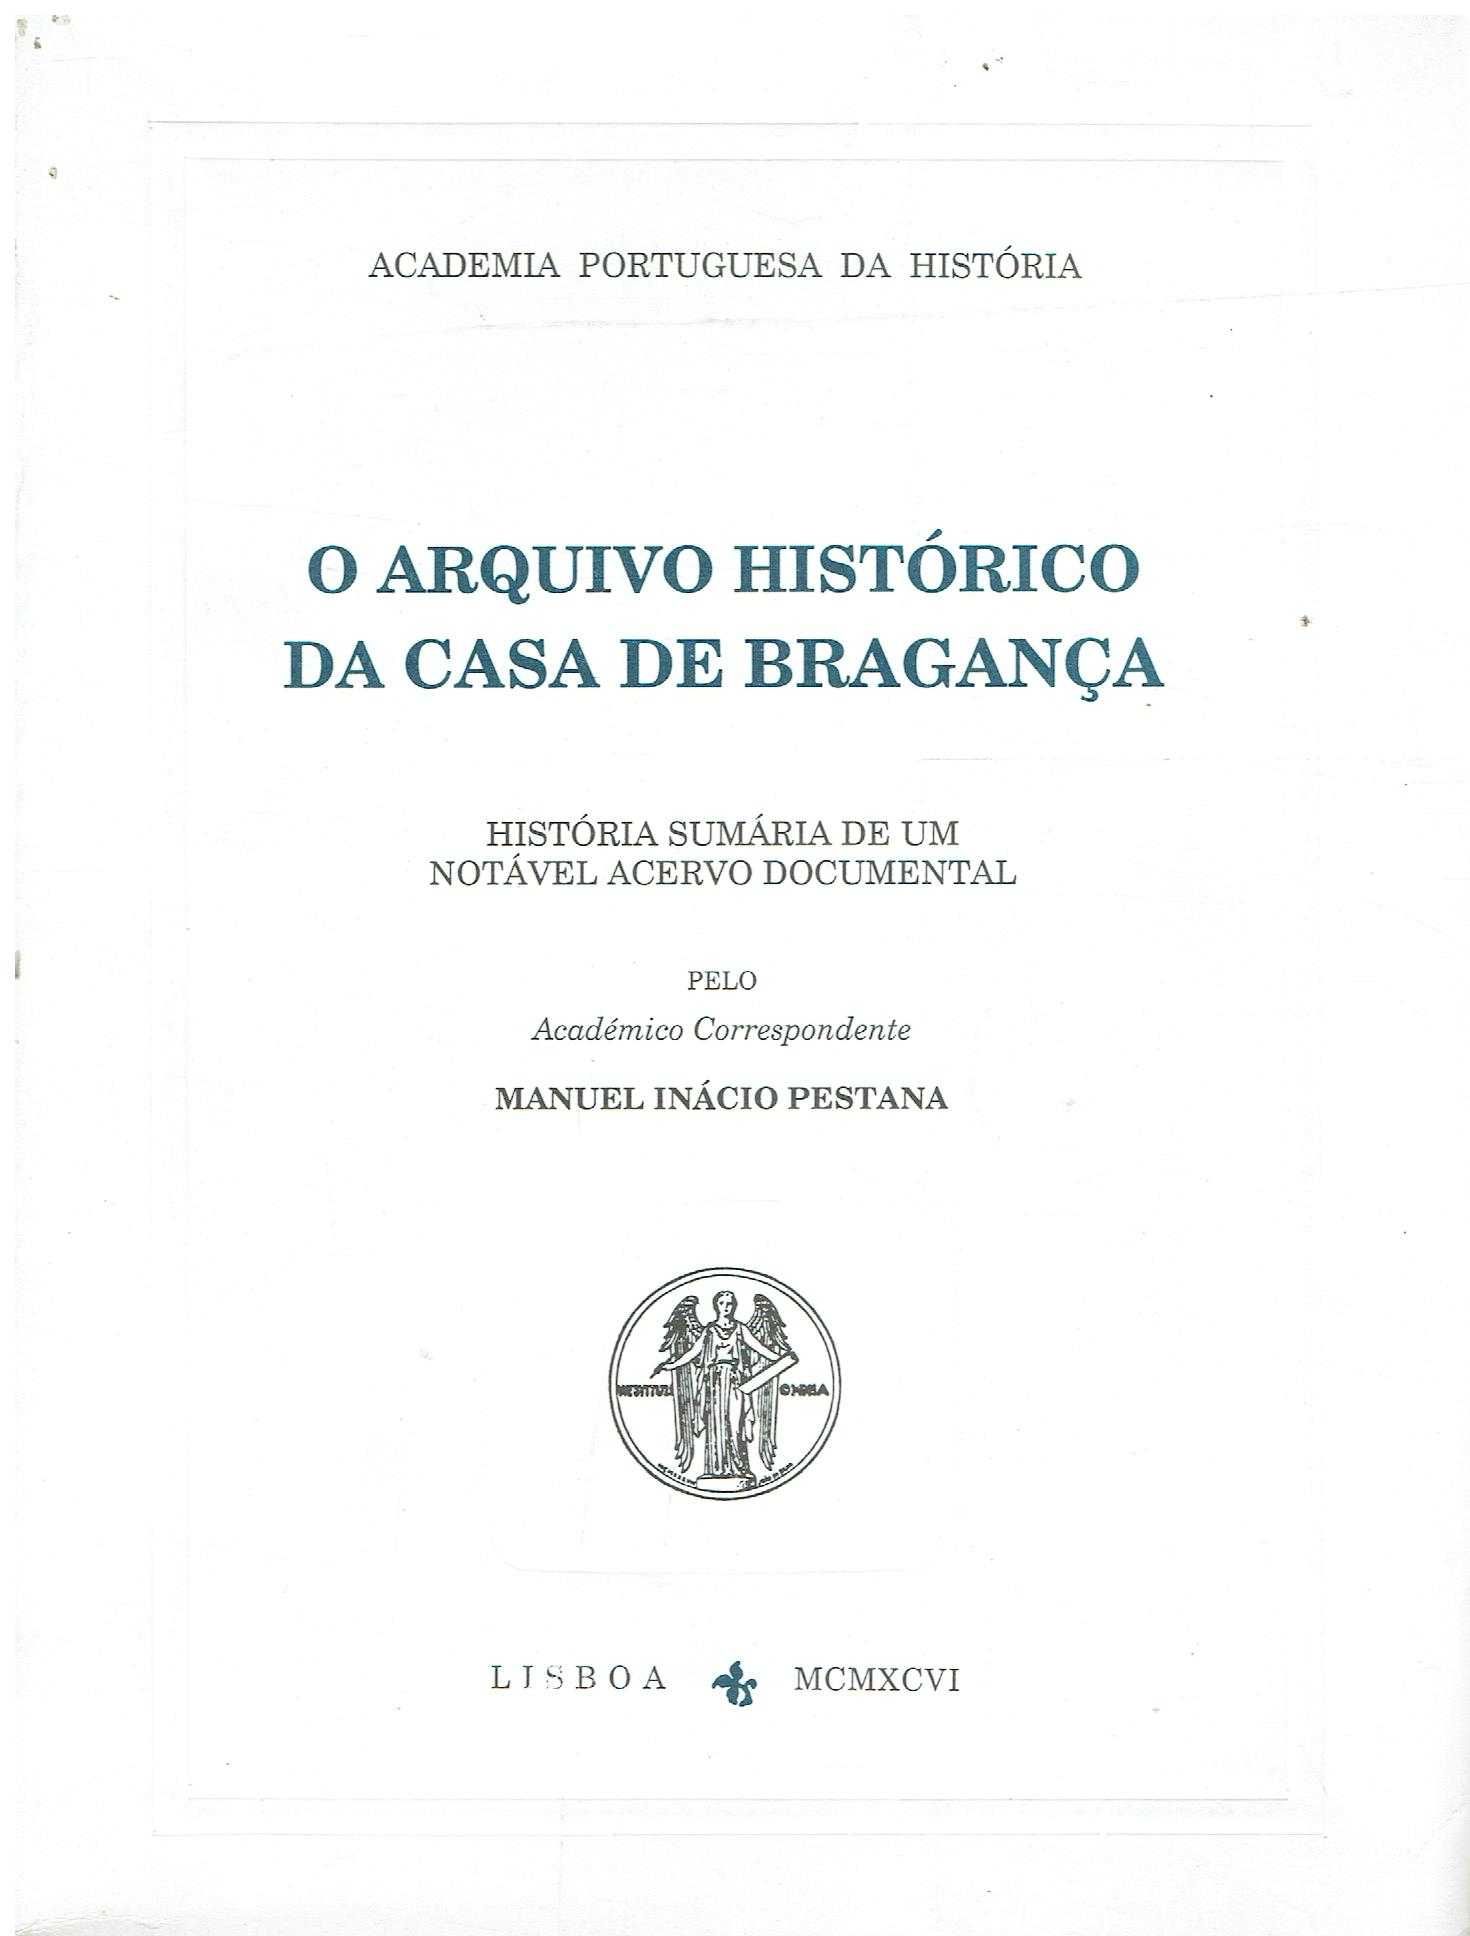 12128

O Arquivo Histórico da Casa de Bragança